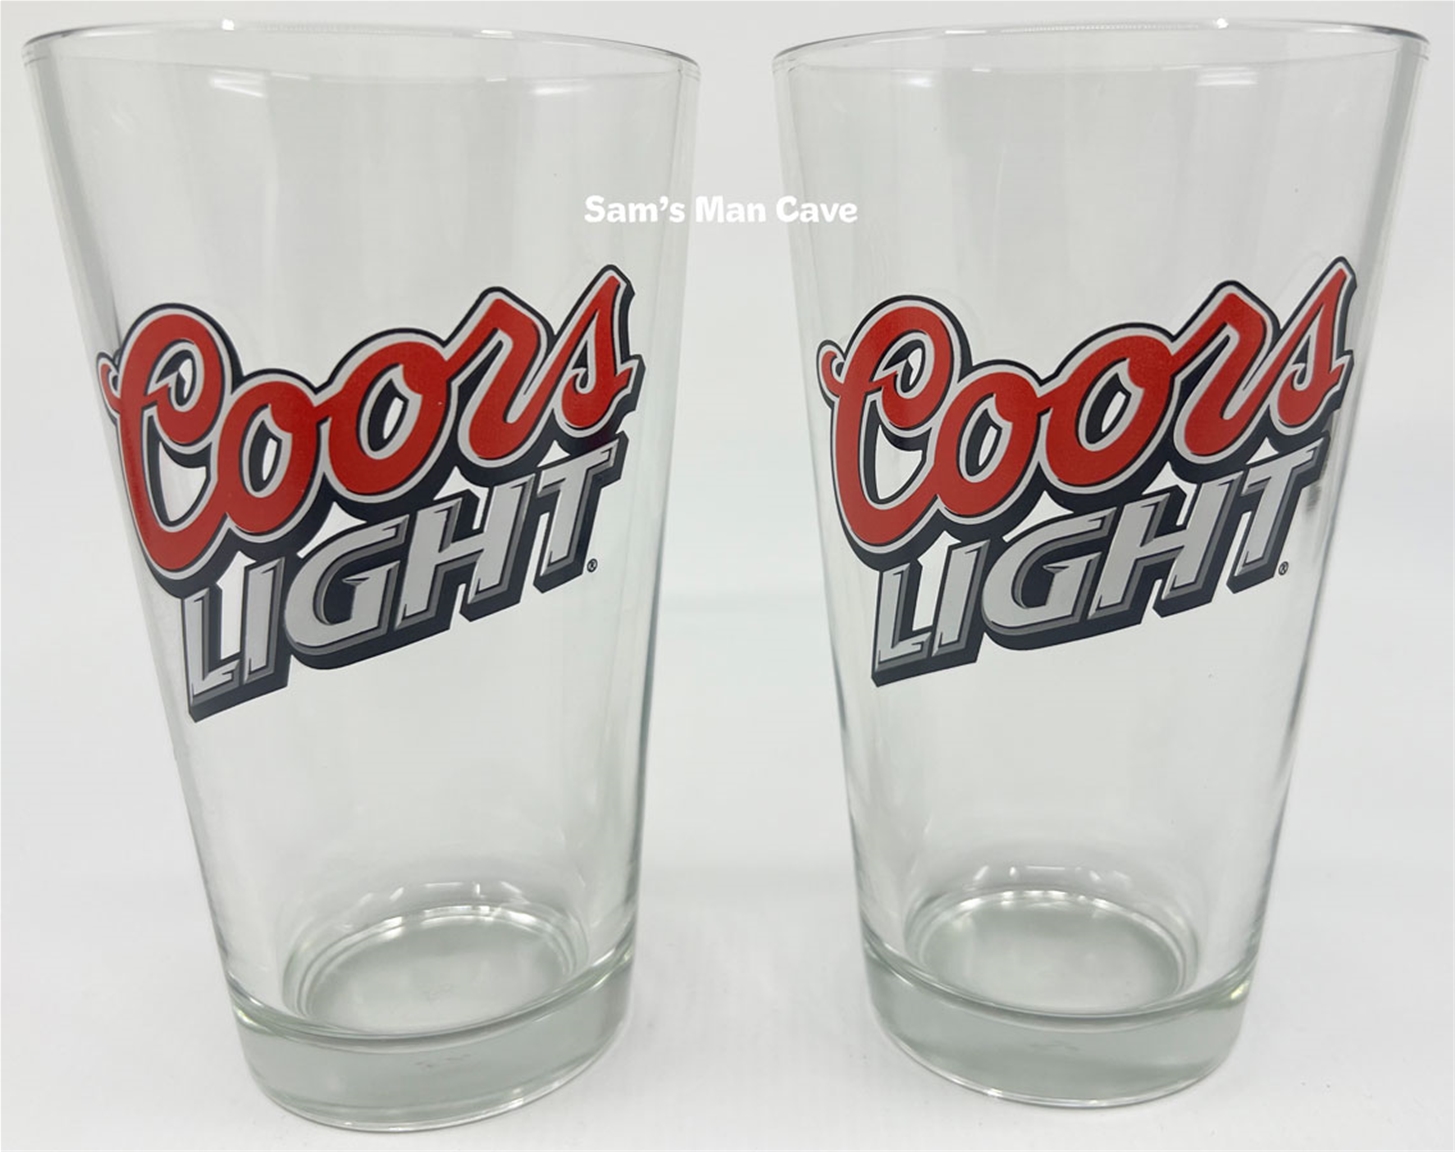 Coors Light Pint Glass Set